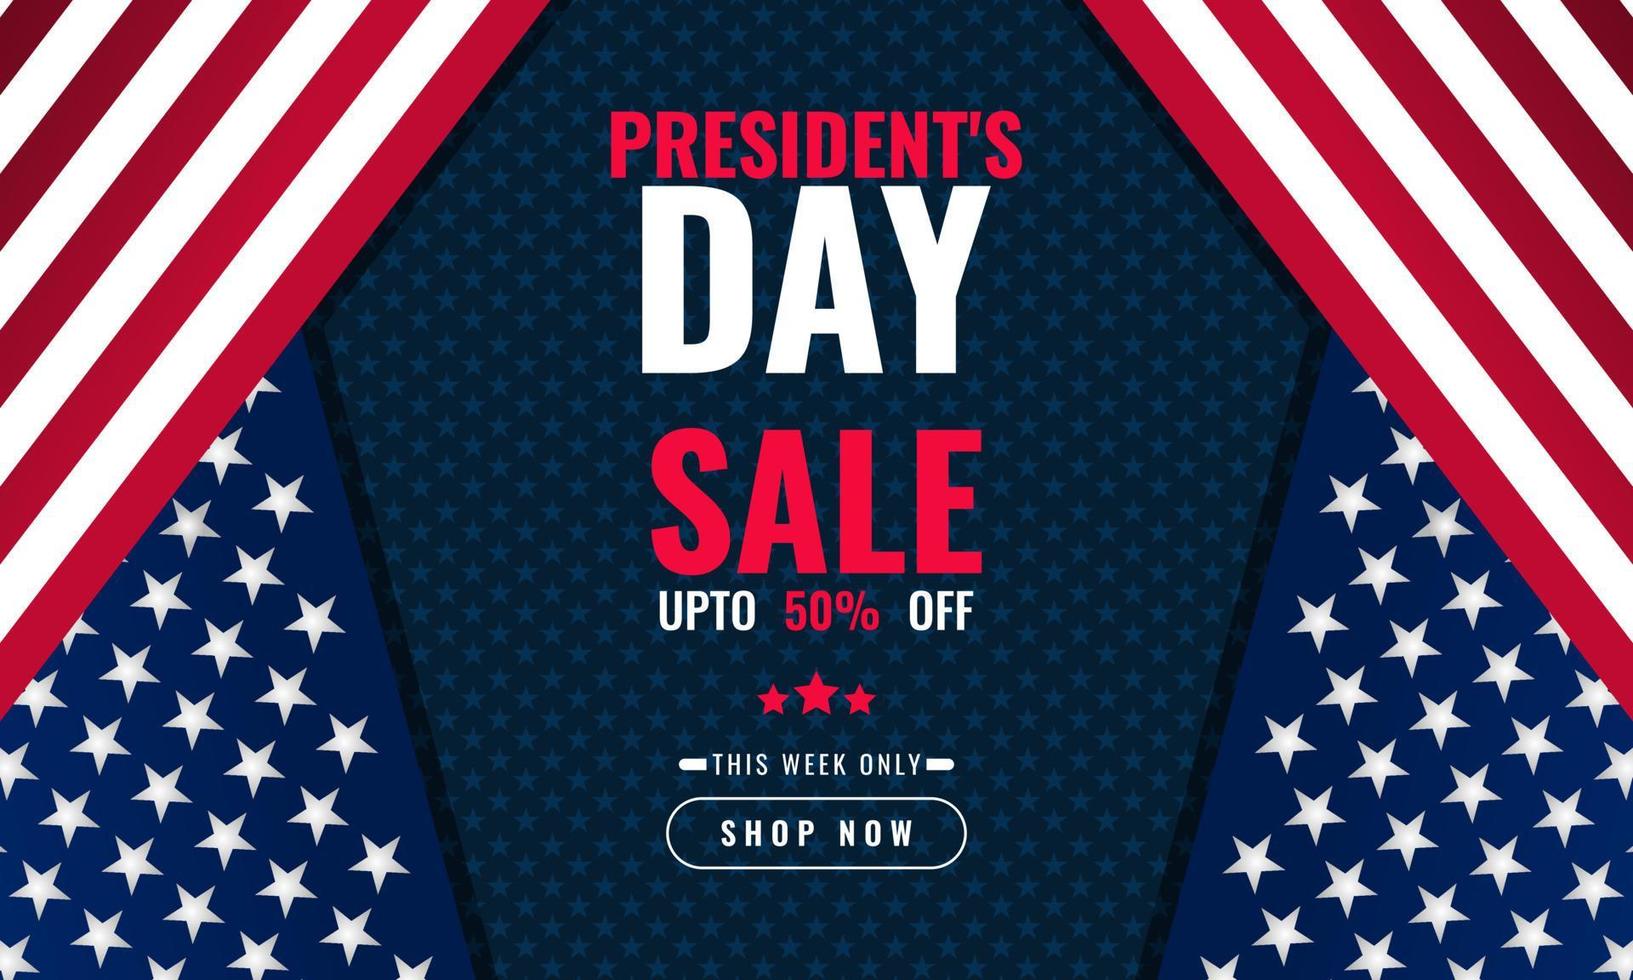 president dag achtergrond verkoopbevordering reclamebanner sjabloon met Amerikaanse vlag ontwerp vector